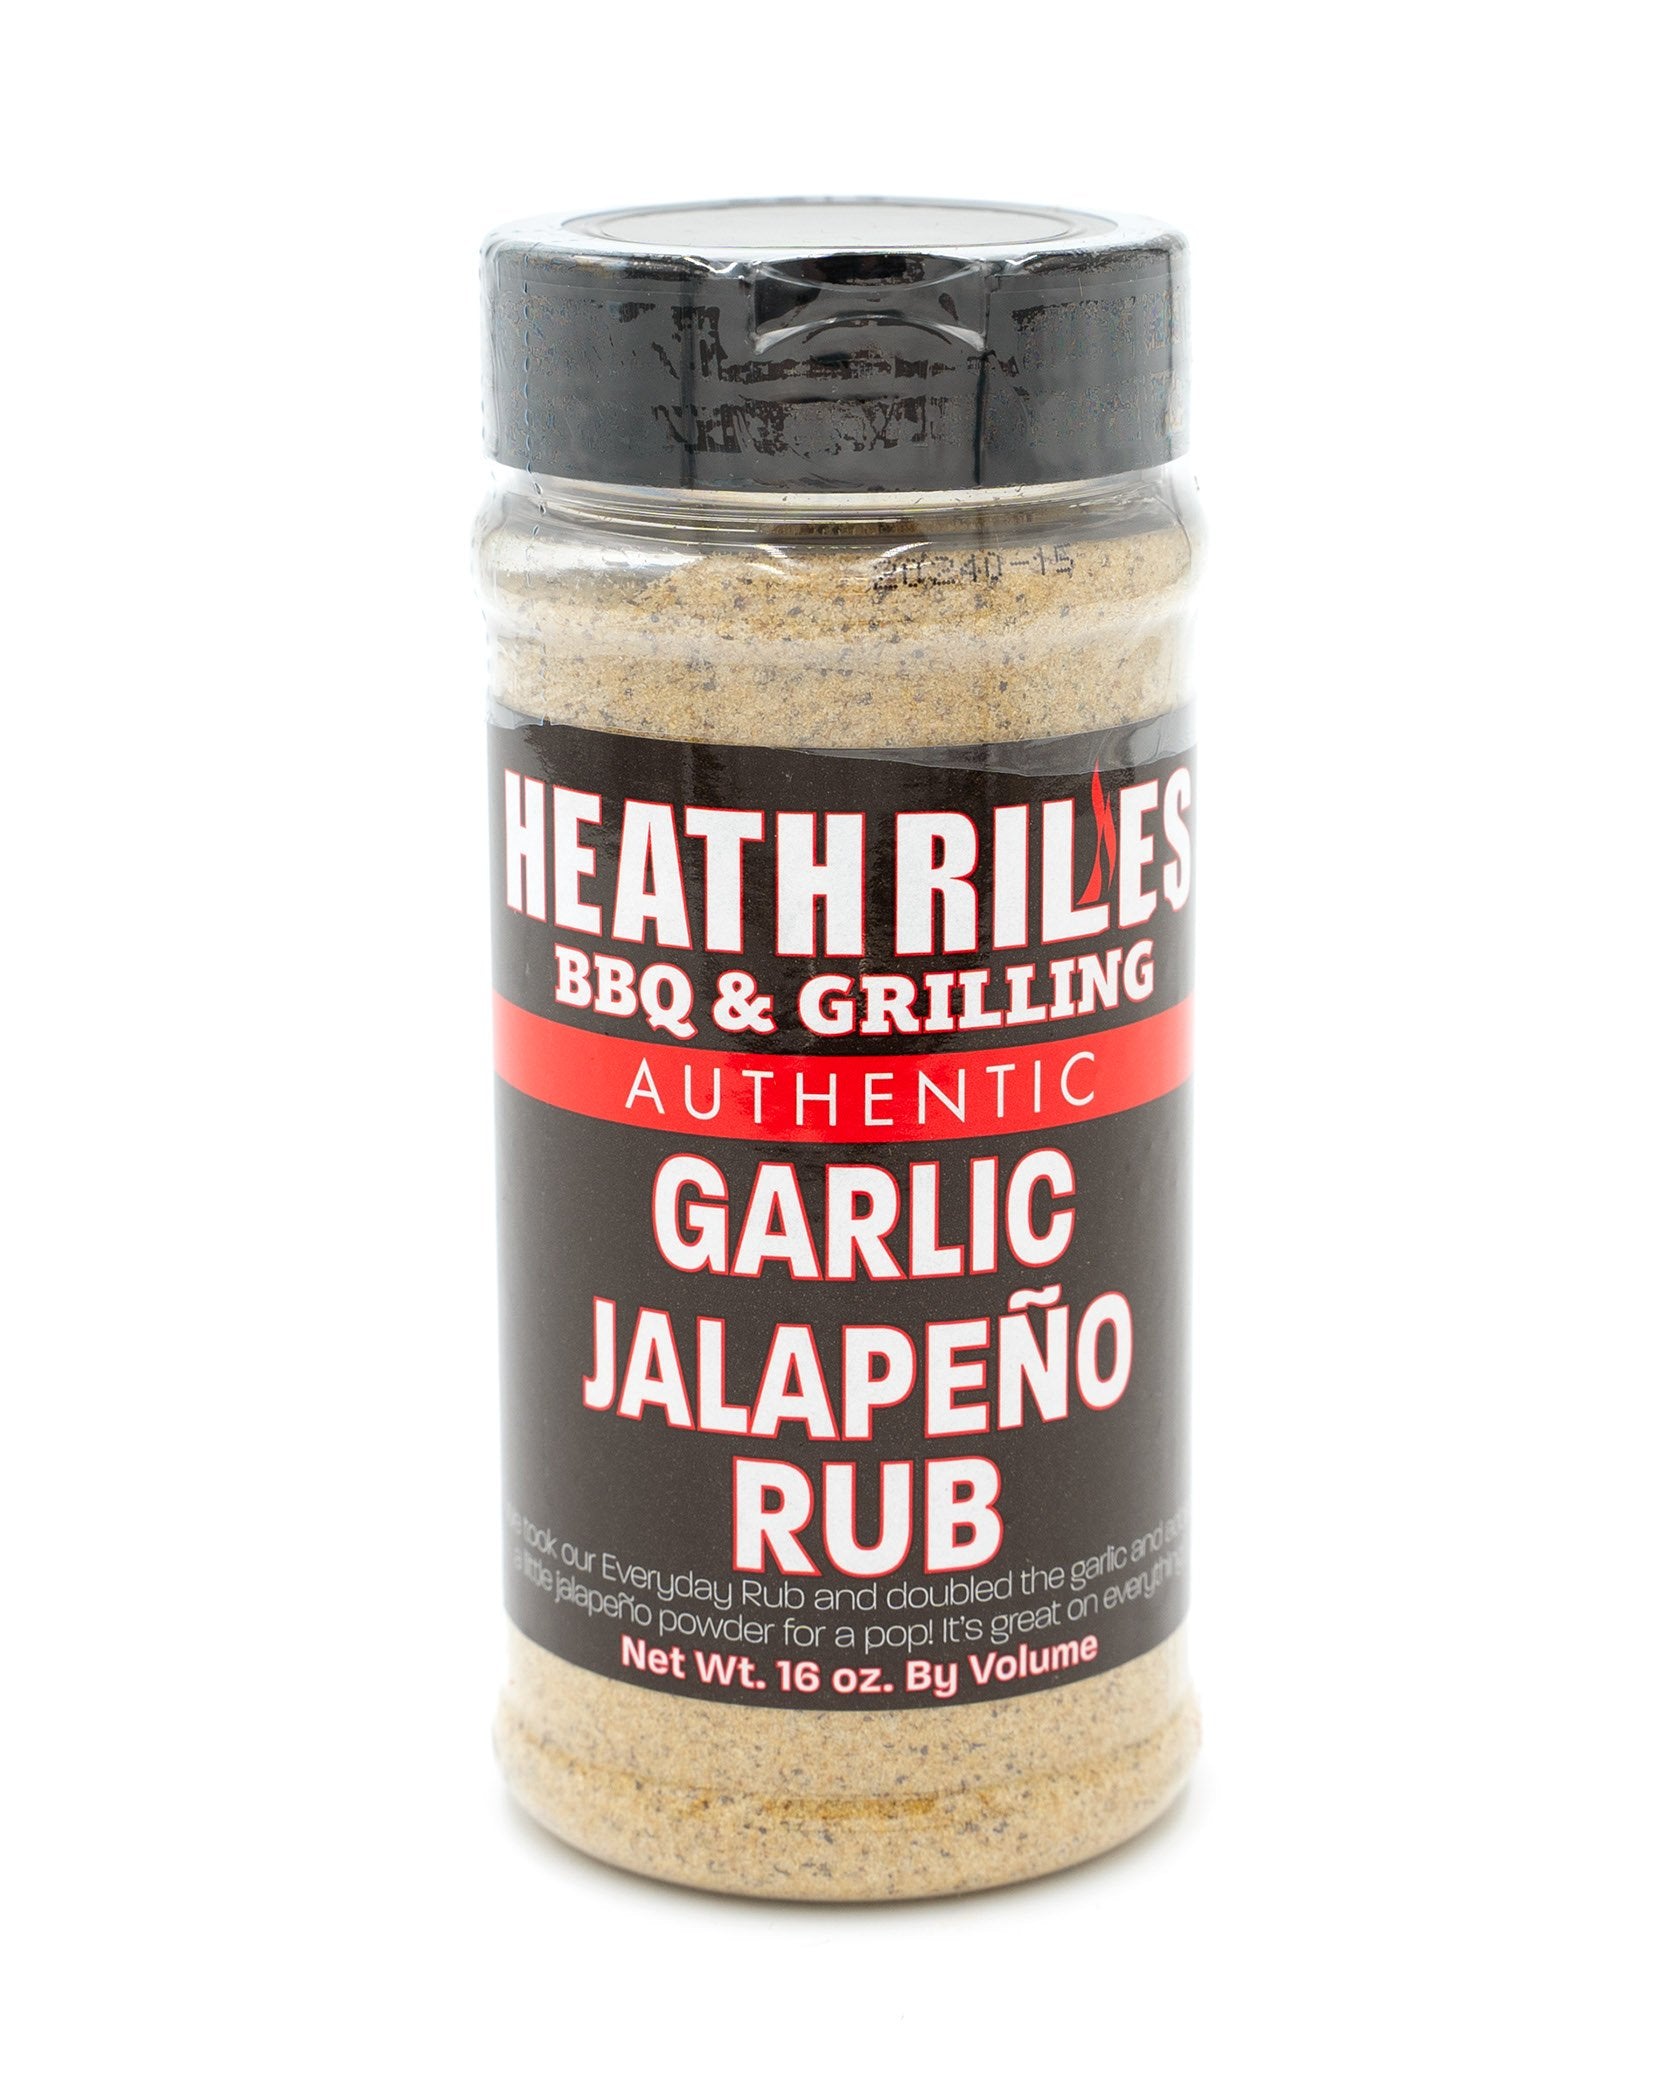 Heath Riles Garlic Jalapeno Dry Rub